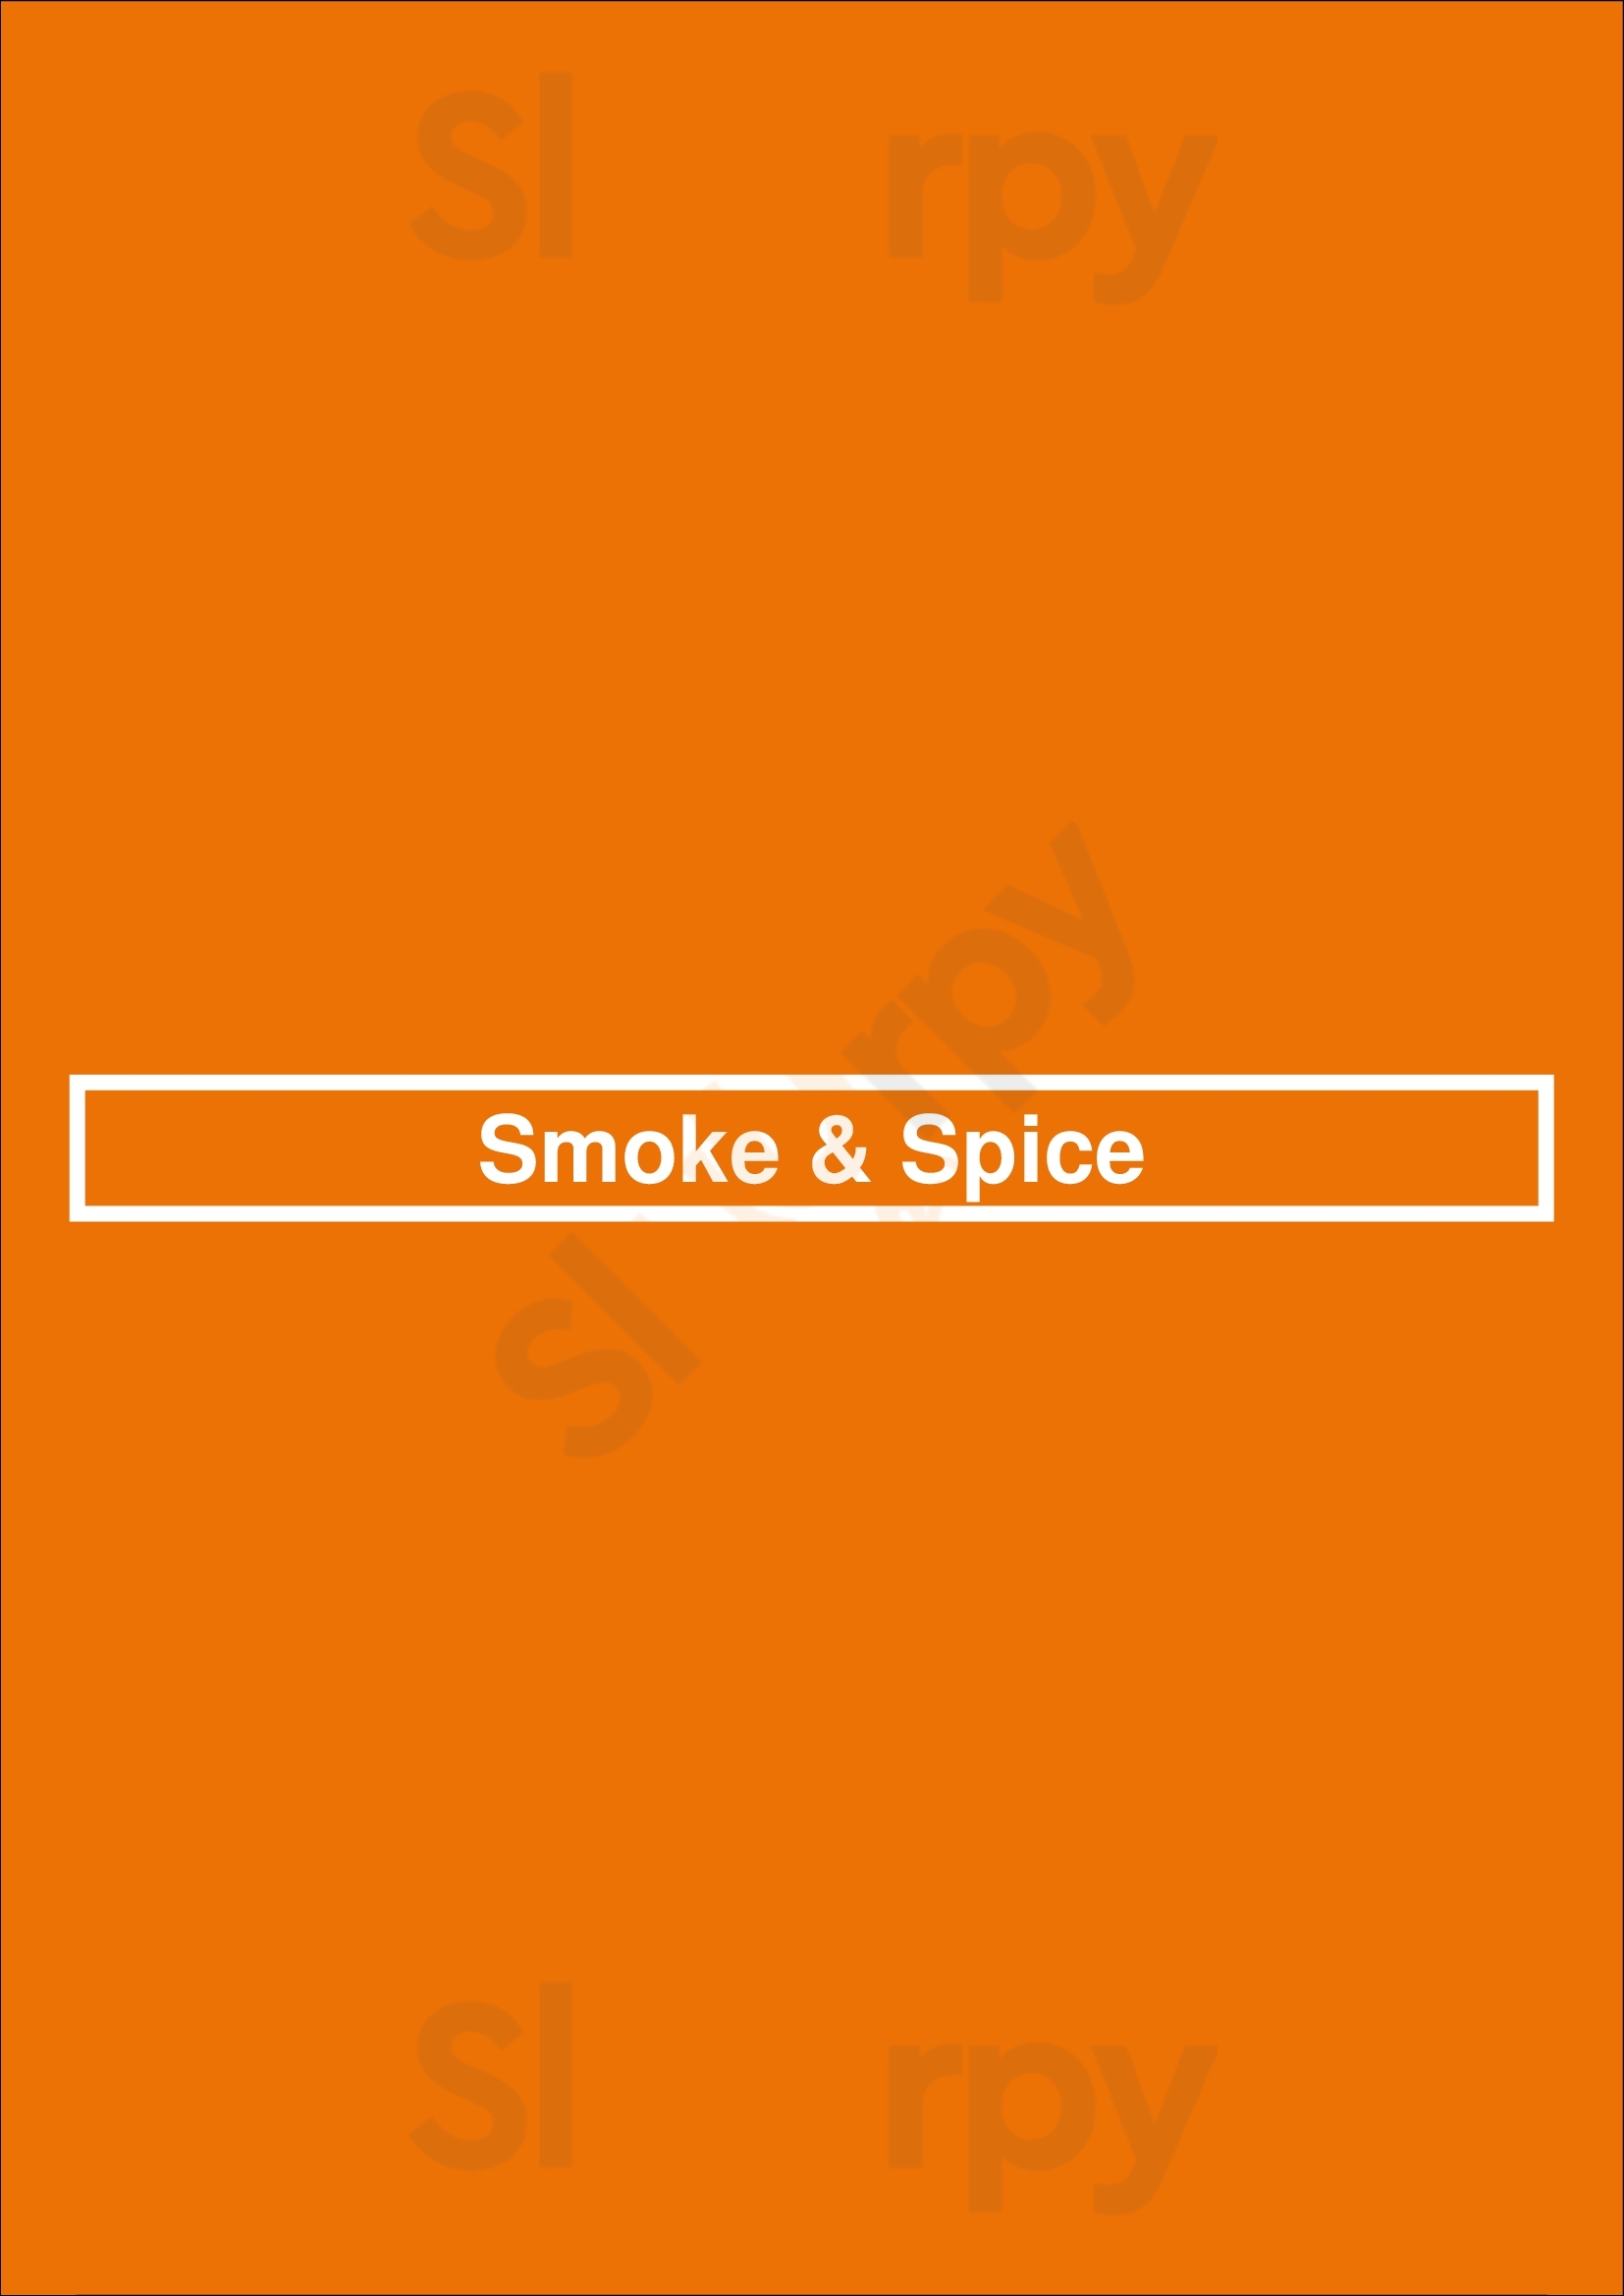 Smoke & Spice Windsor Menu - 1